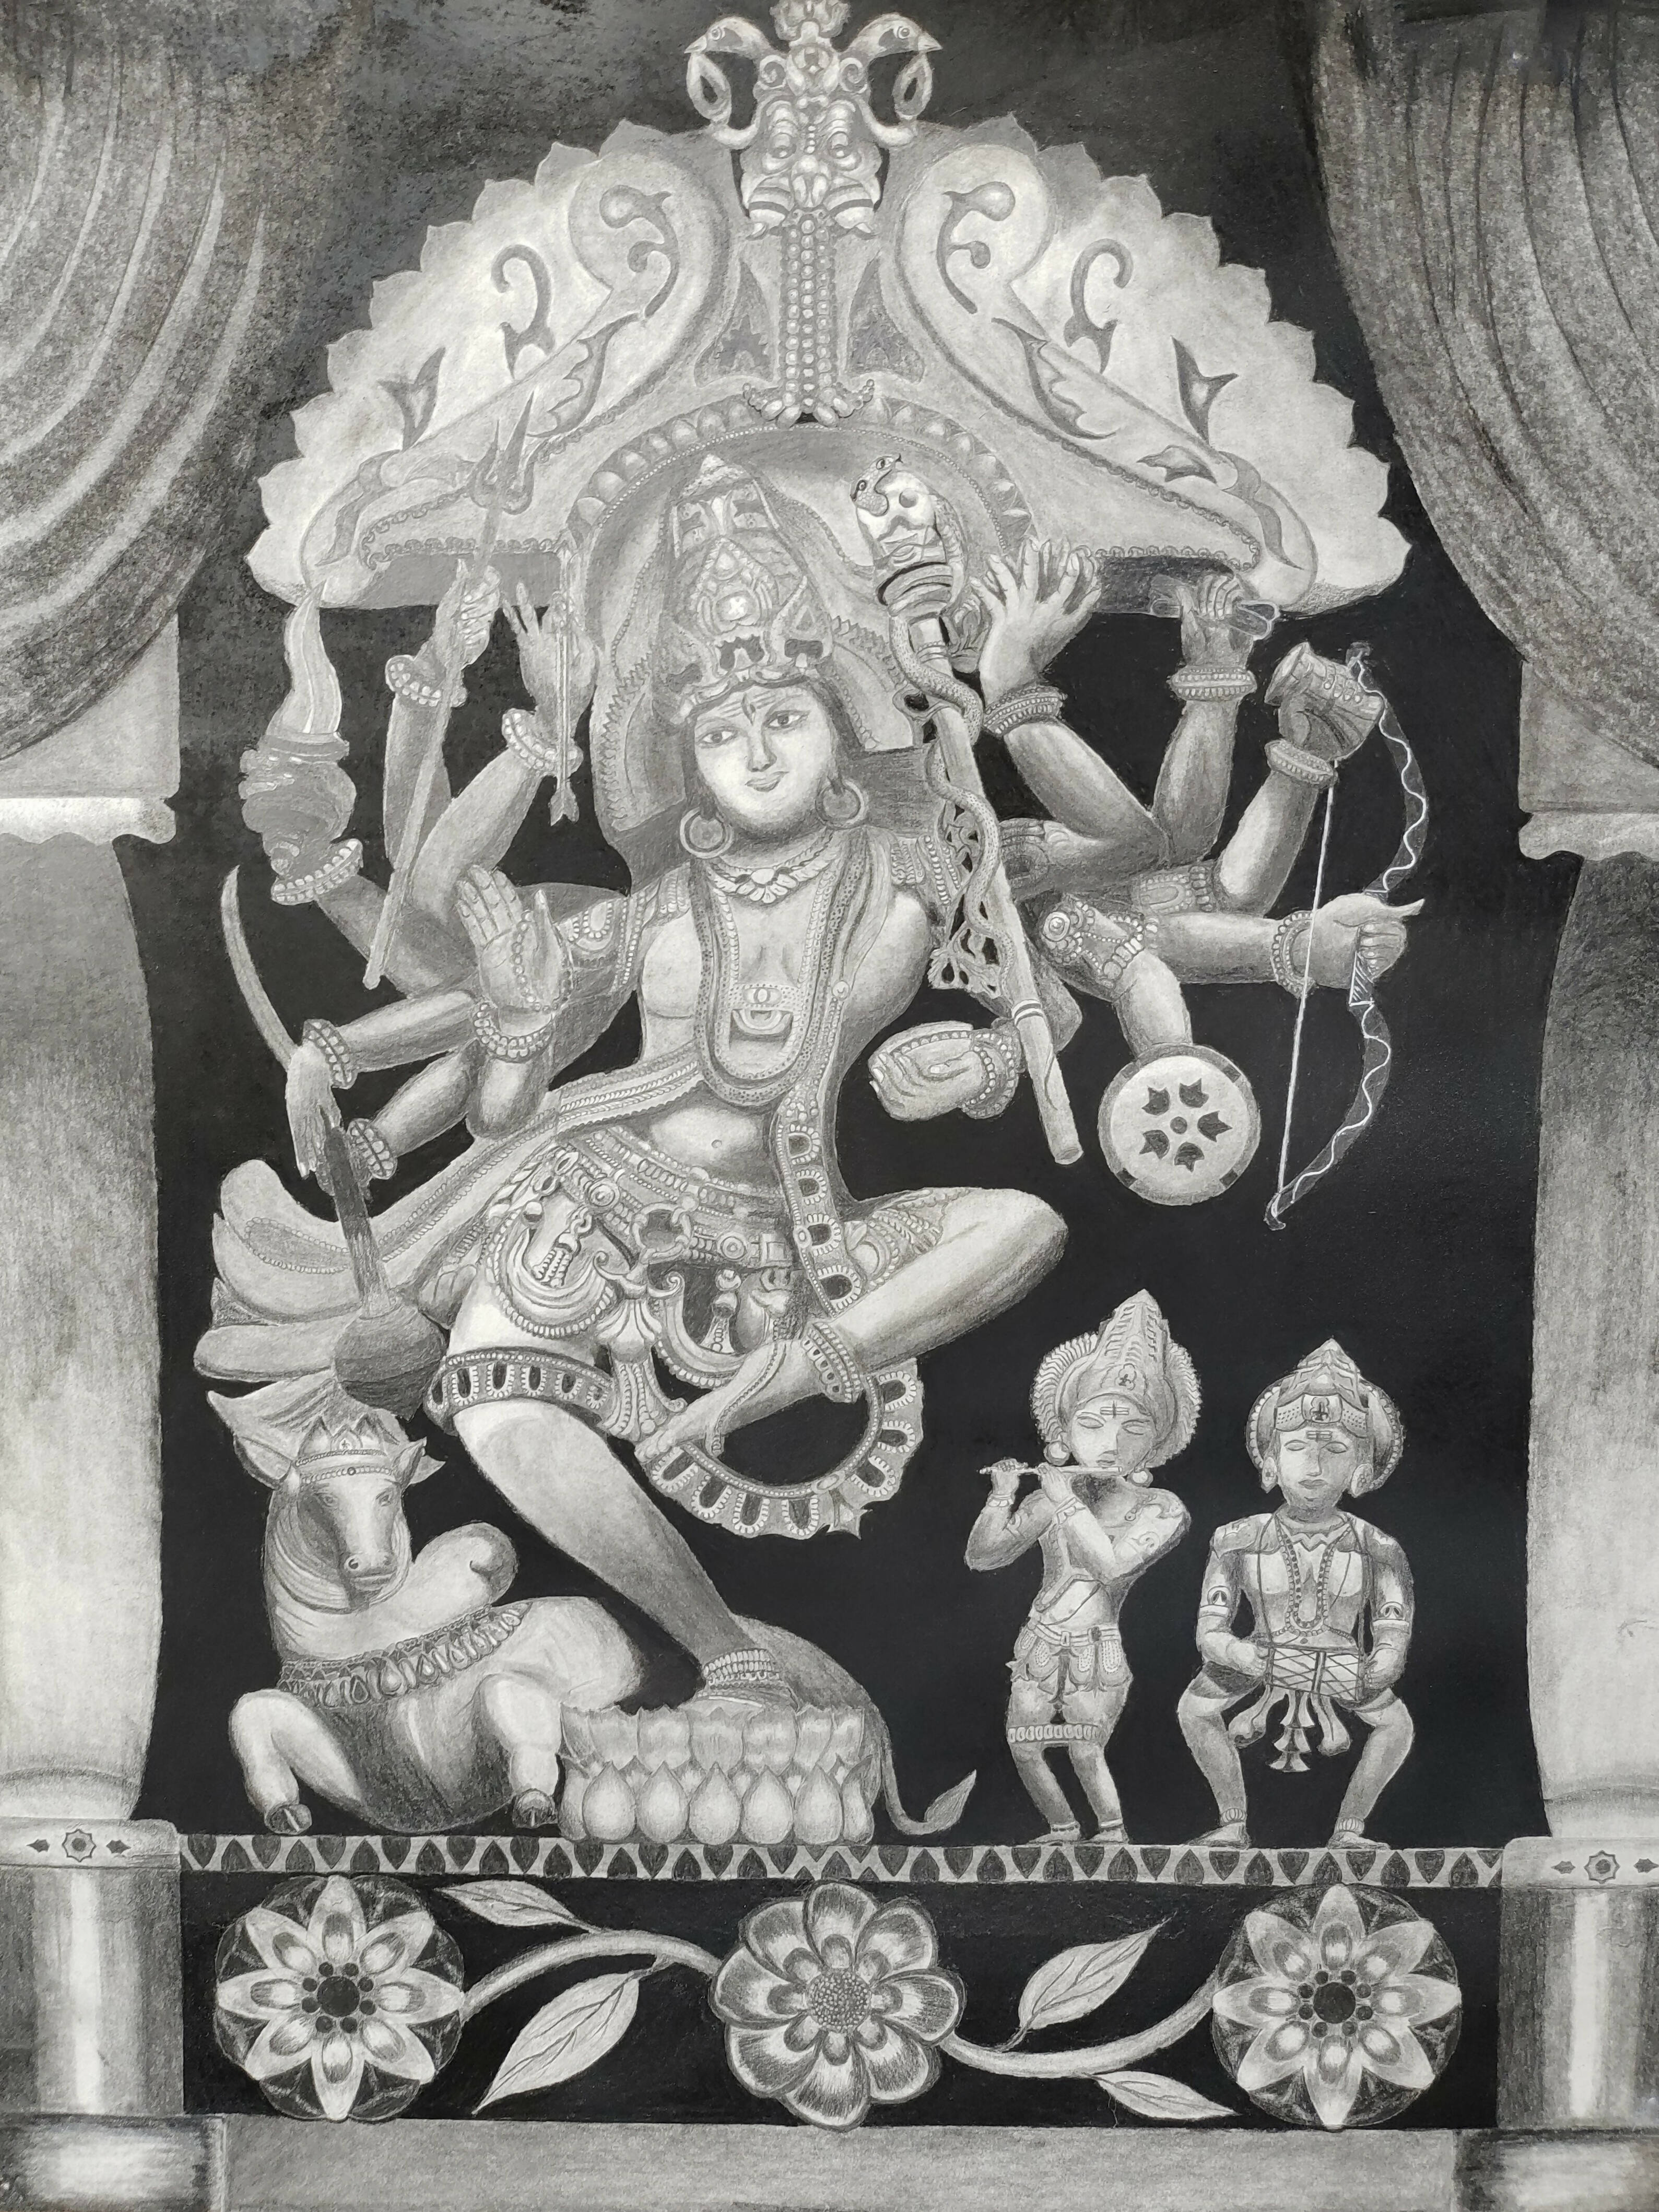 Natya Bhirava (Lord Shiva)